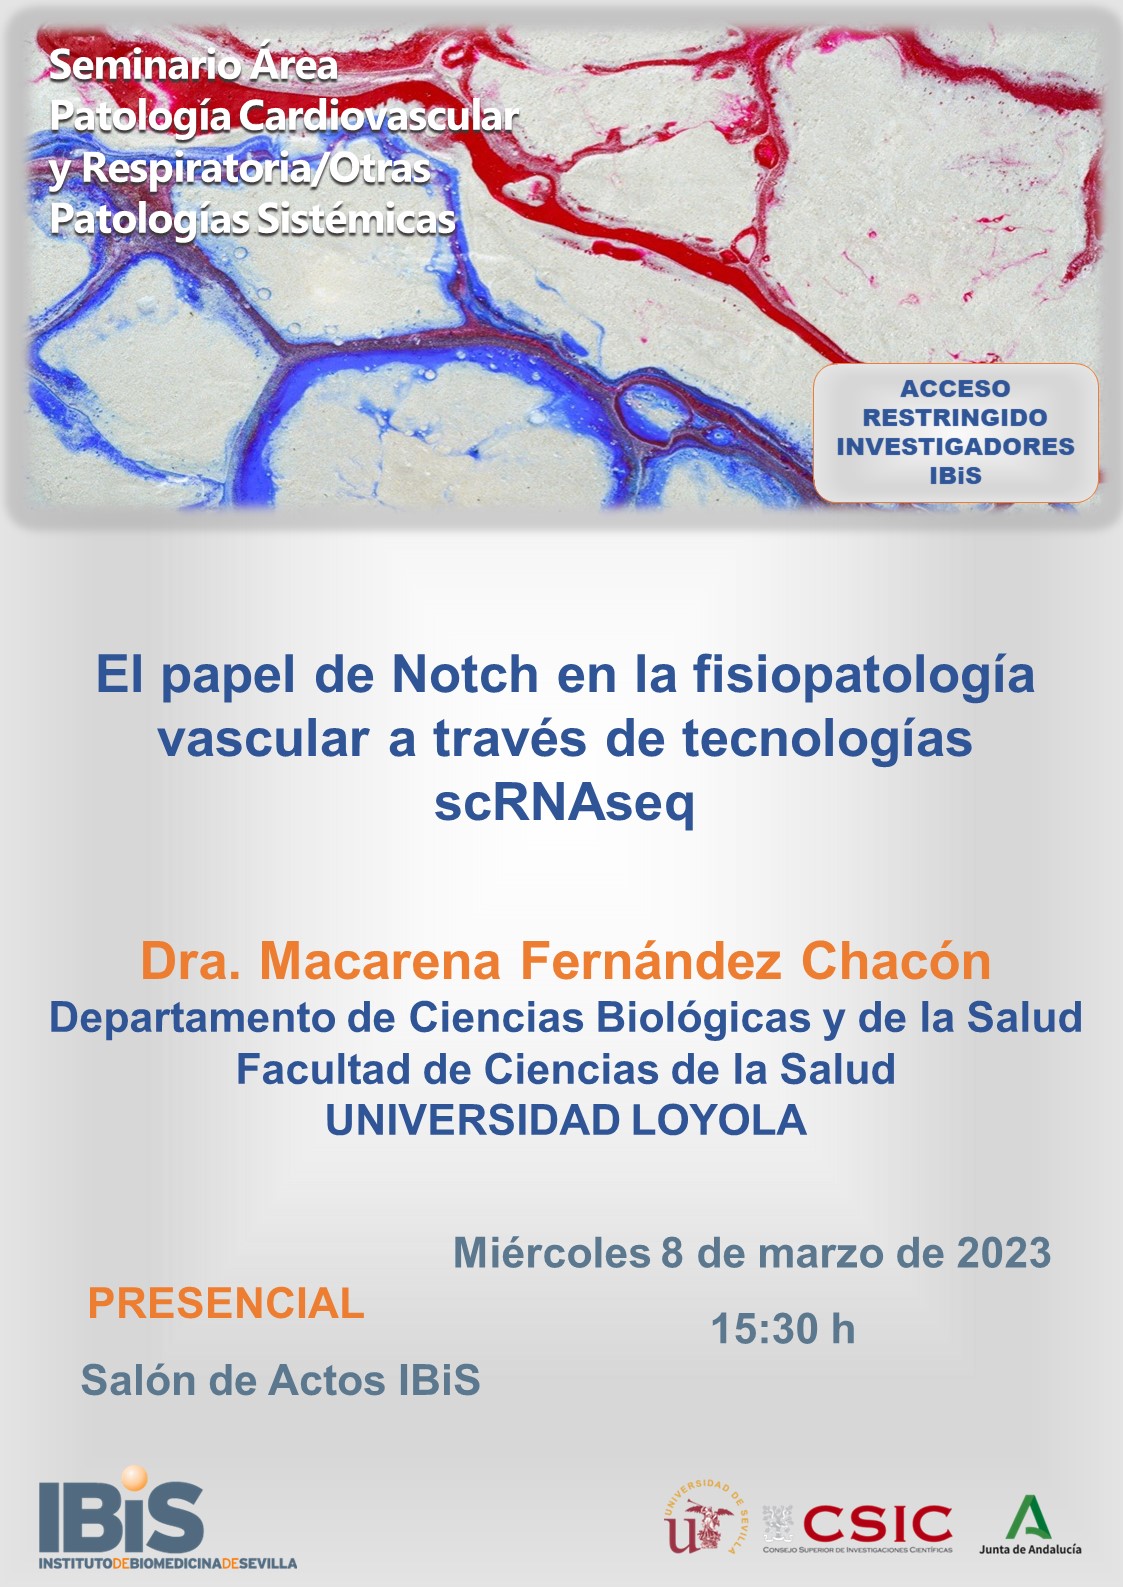 Poster: El papel de Notch en la fisiopatología vascular a través de tecnologías scRNAseq